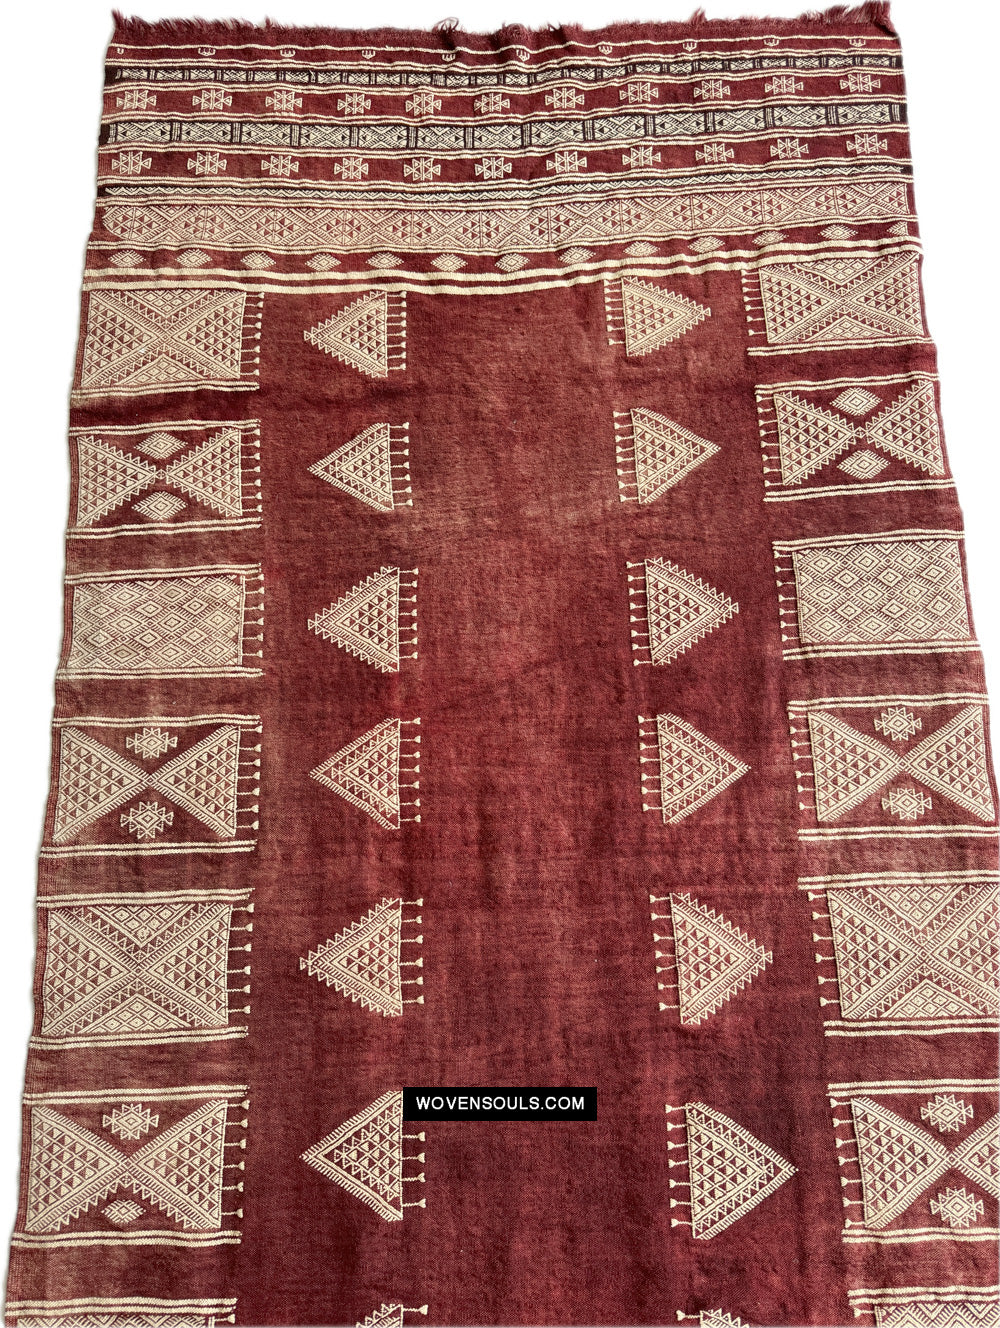 1864 Antike Tunesisch Bakhnoug Schal - Textilkunst Meisterwerk